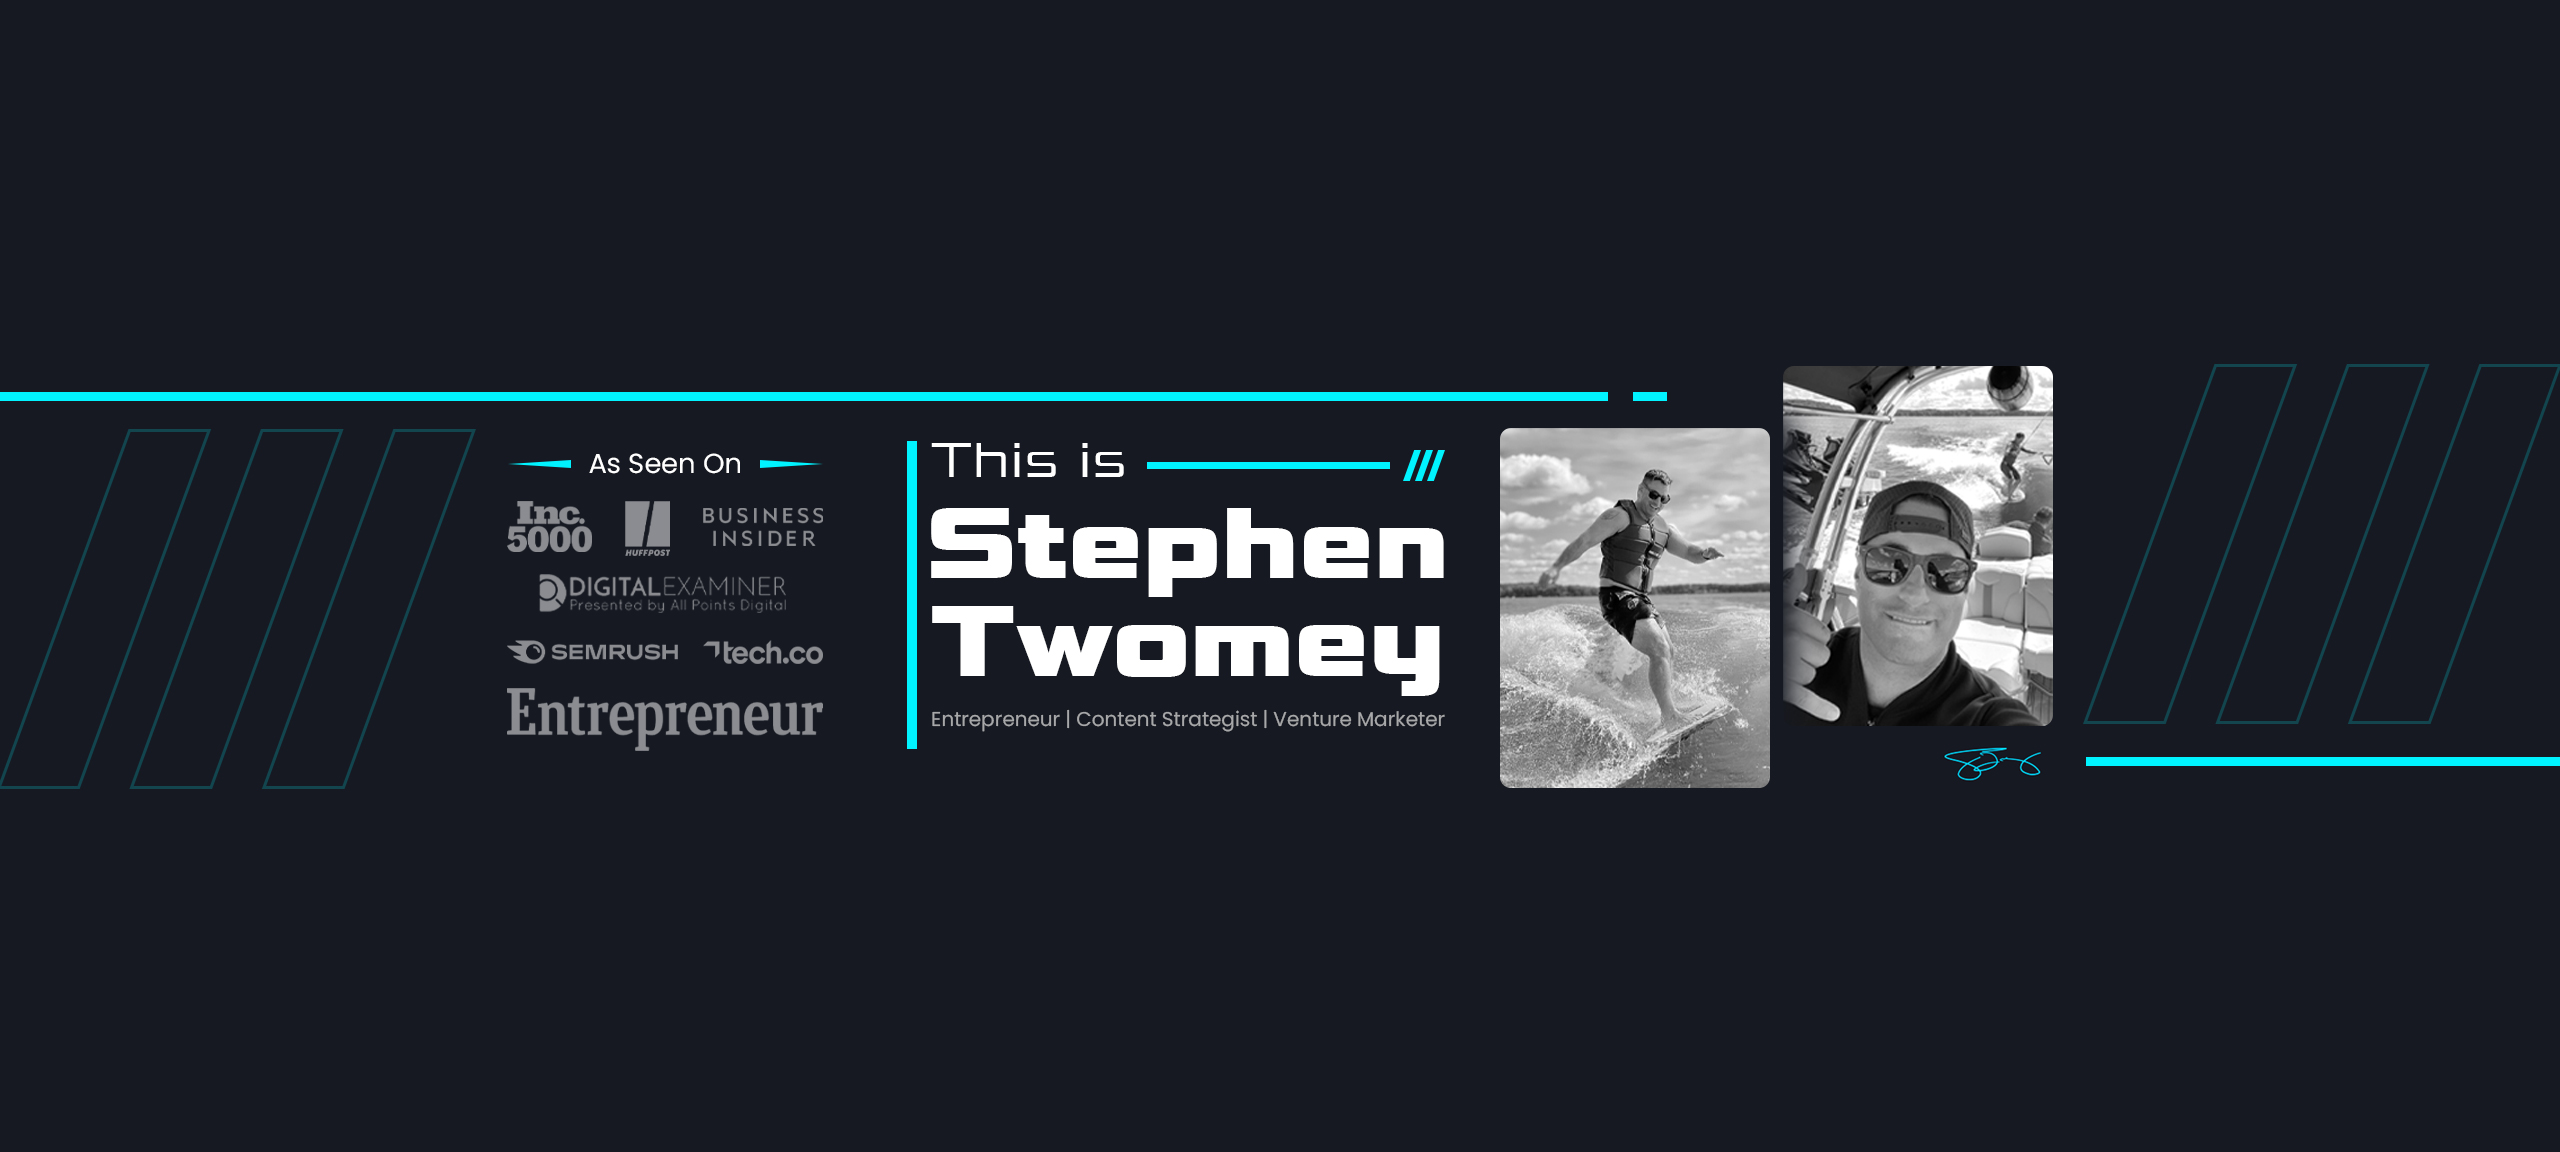 Stephen Twomey venture marketer